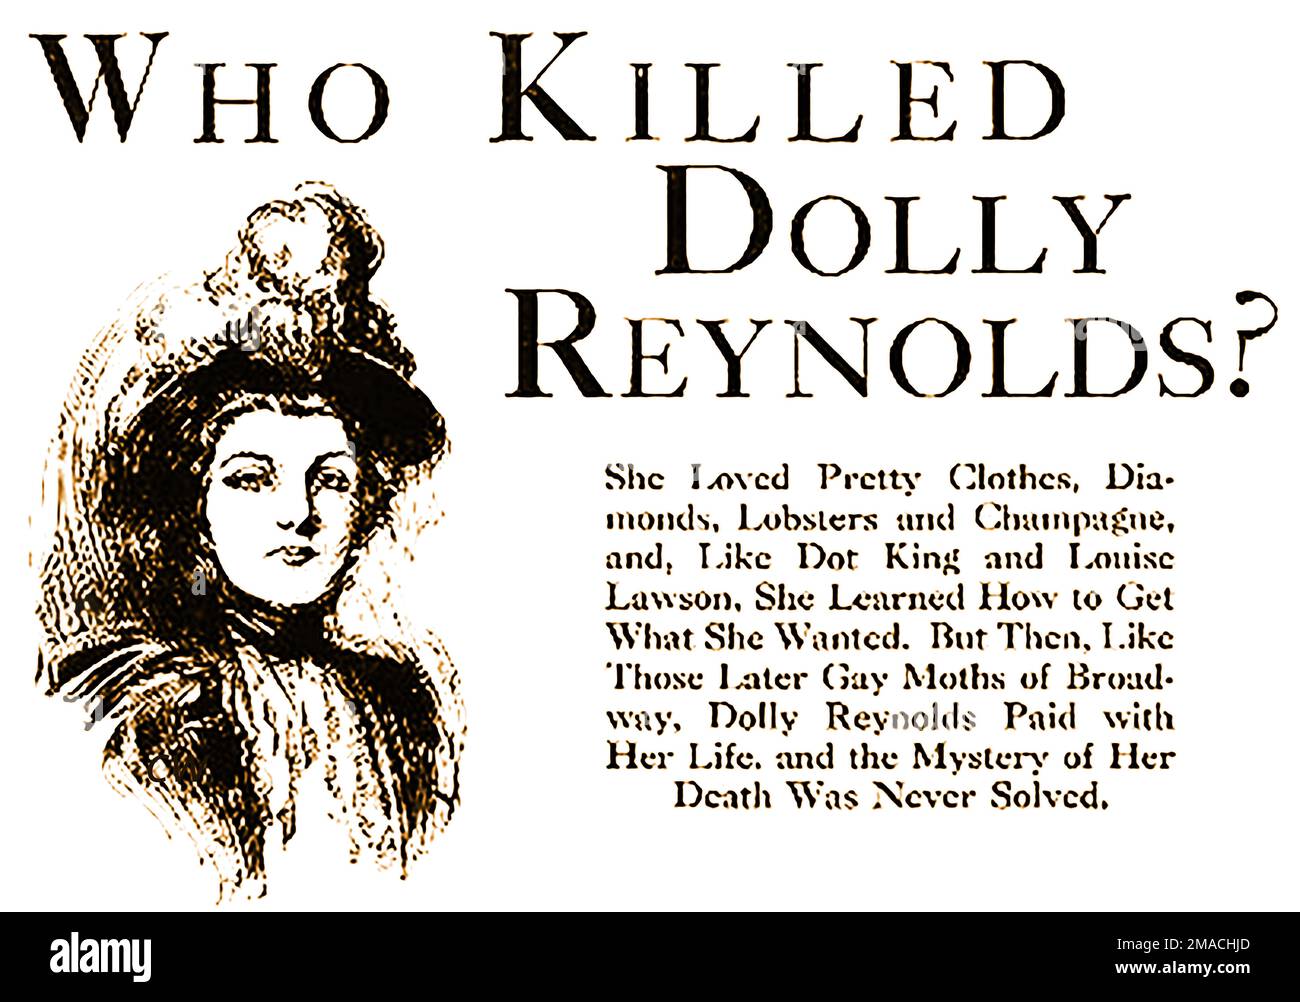 RITRATTO DI DOLLY REYNOLDS - Dentista, Dr Samuel J Kennedy è stato implicato nel lungo caso di omicidio di Dolly Reynolds negli Stati Uniti. La donna che si era registrata con il nome di “E. Maxwell e moglie al Grand Hotel di New York è stata trovata derubata e morta nella sua stanza da una cameriera il 16th agosto 1898, il suo assassino non è mai stato trovato. Foto Stock